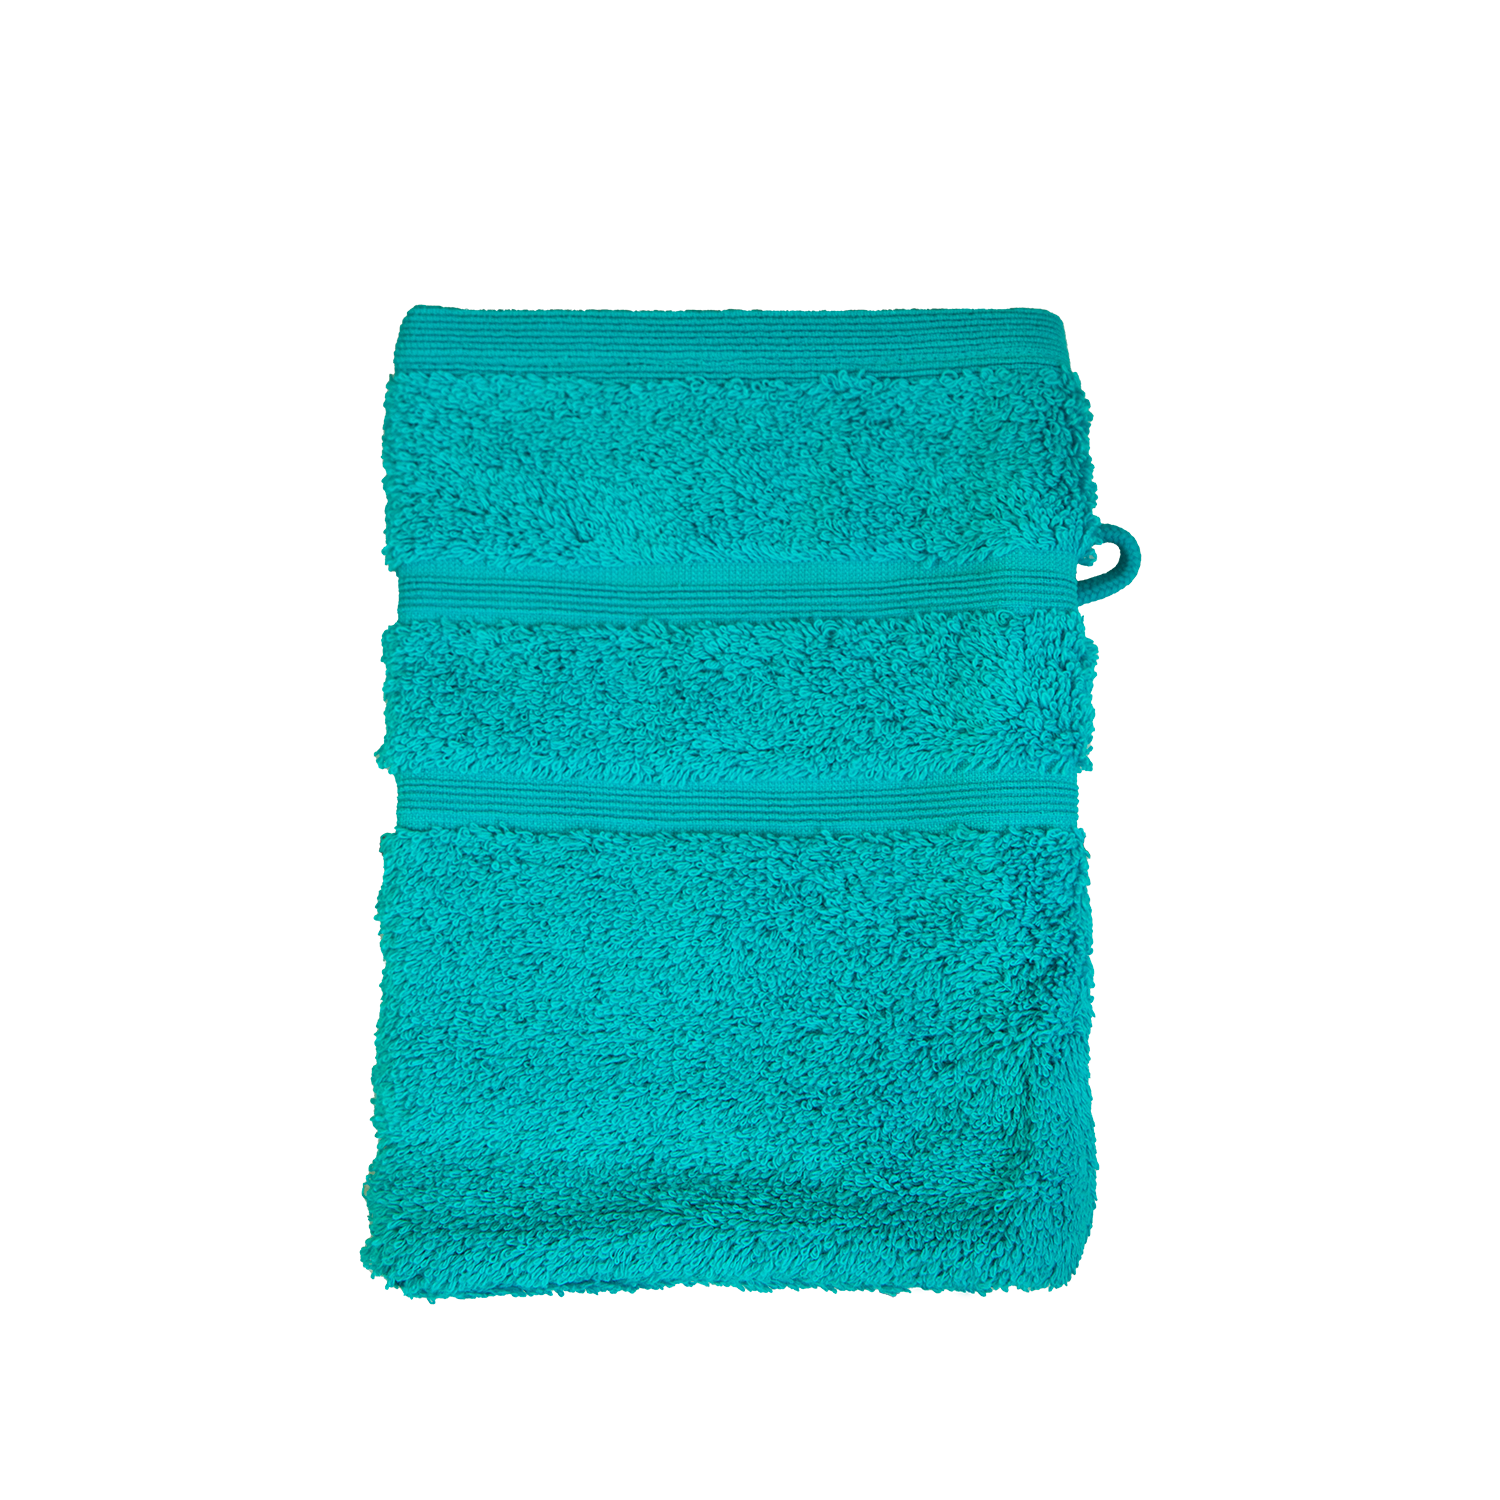 Bio Baumwoll Waschhandschuh, Größe 16 mal 21 cm in der Farbe Sea (Türkis)